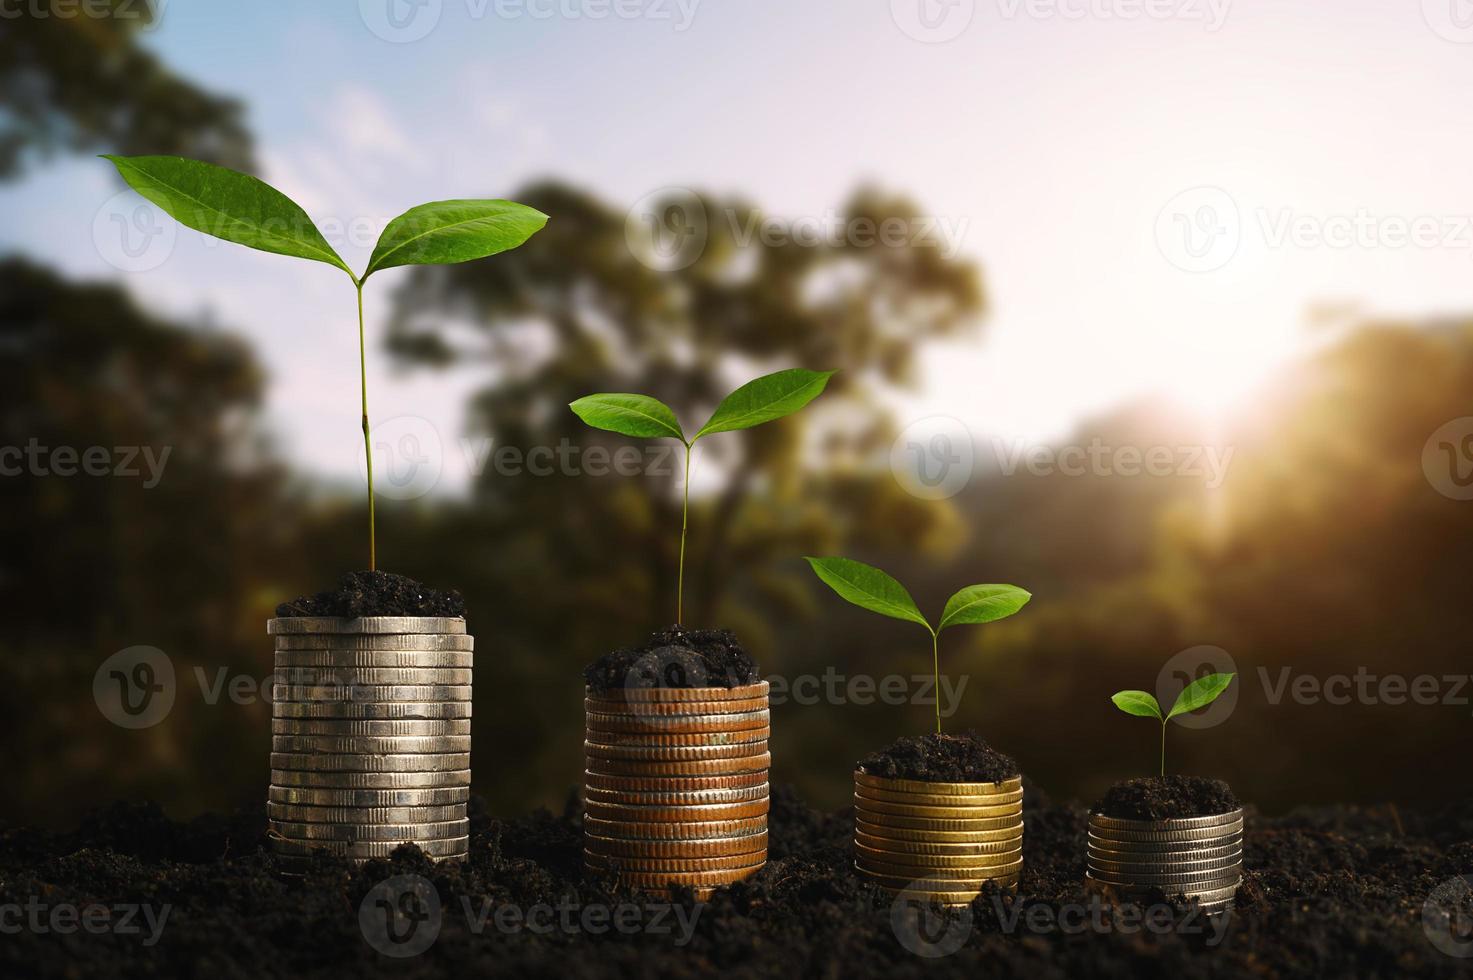 plantar passo crescente com pilha de moedas na sujeira e sol na luz da manhã da natureza. conceito economizando dinheiro. foto